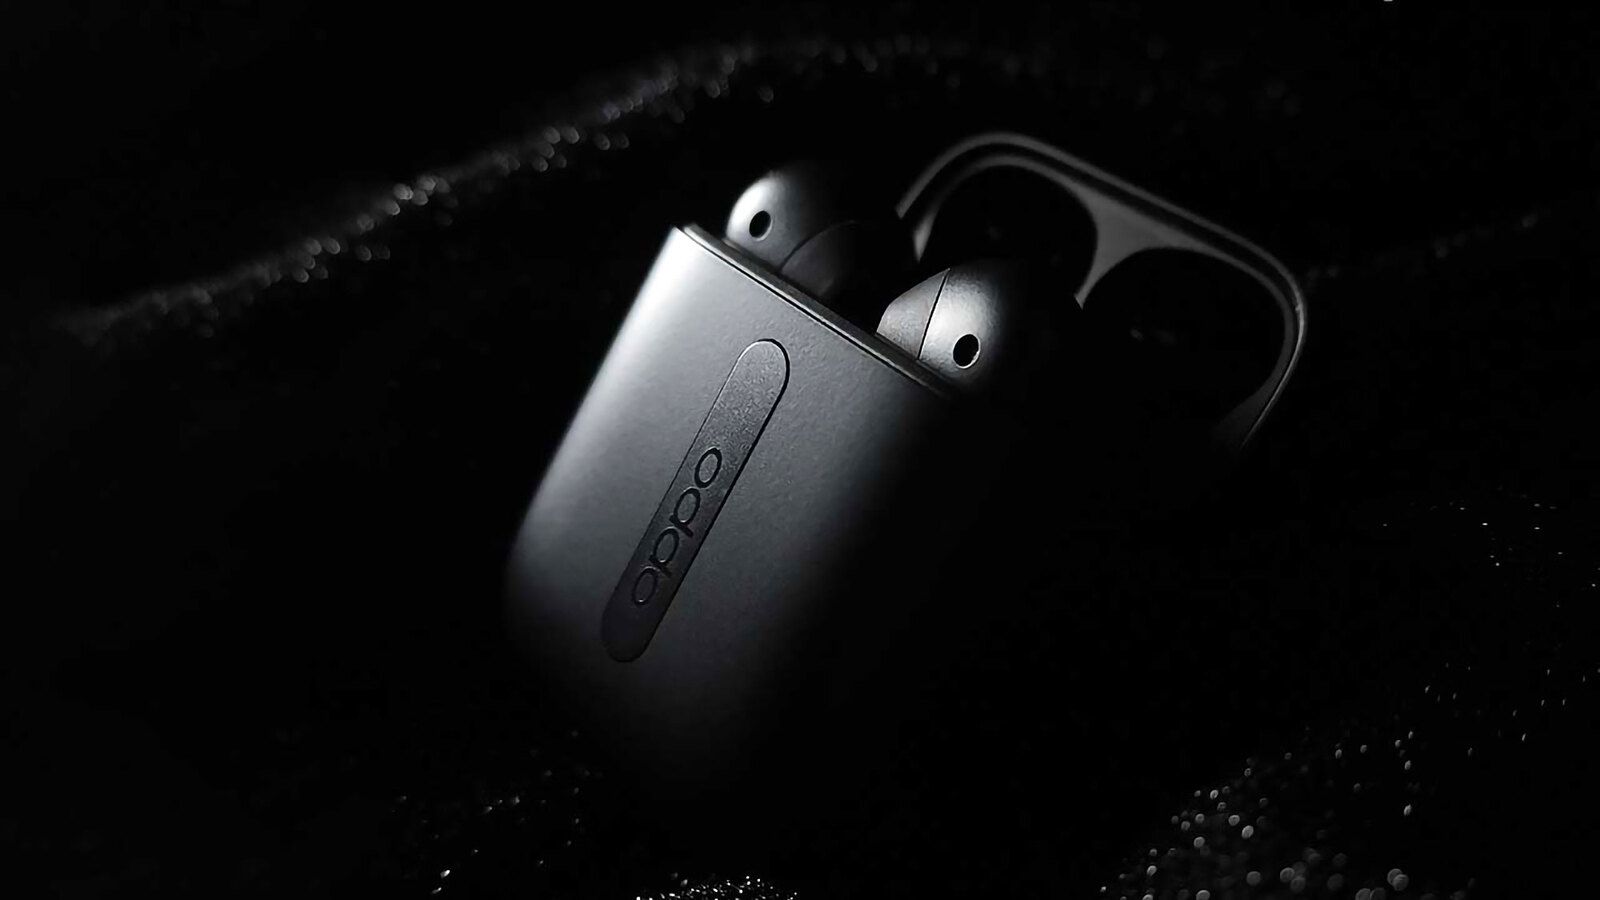 OPPO Enco Free Review: New Sports Wireless Headphones - TOP Enco Free Headphones